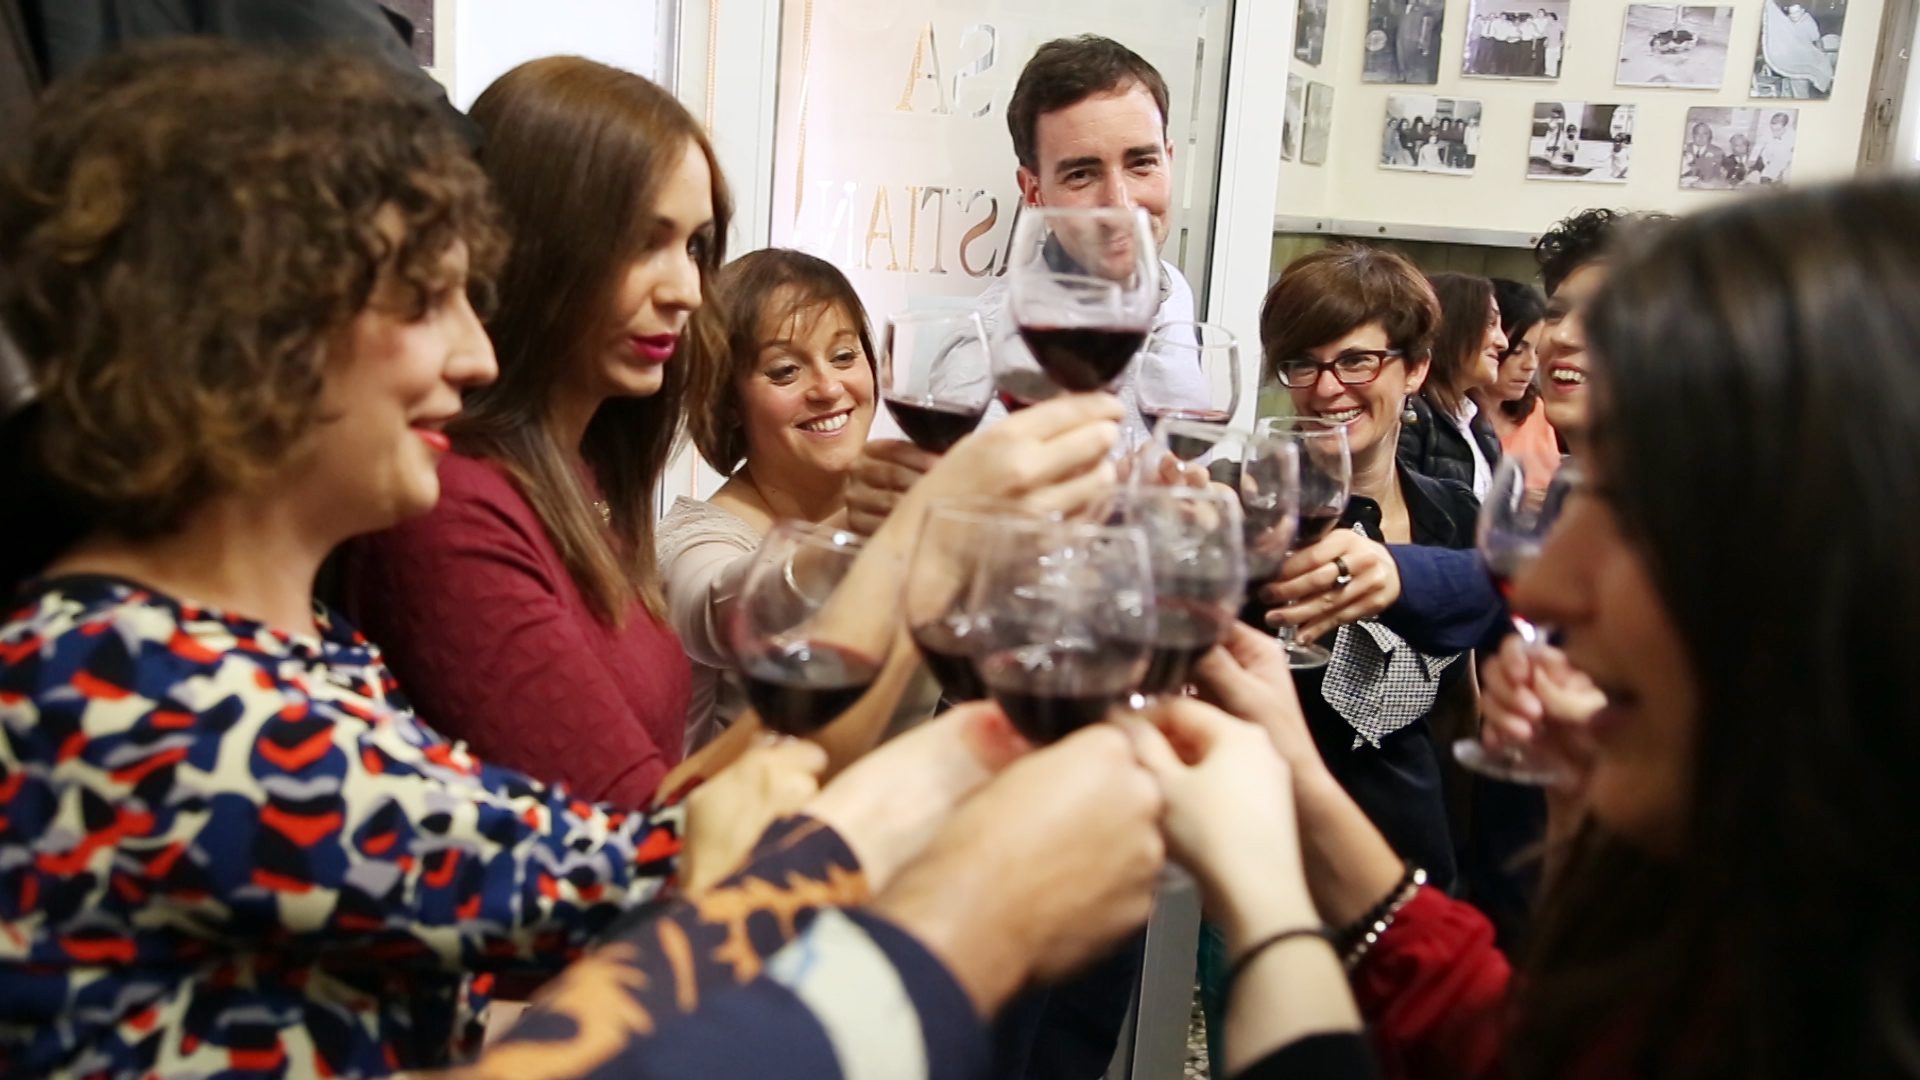 Diez restaurantes y bares de vinos participan en ‘Fériate con la Ruta’ con menús a 25 euros